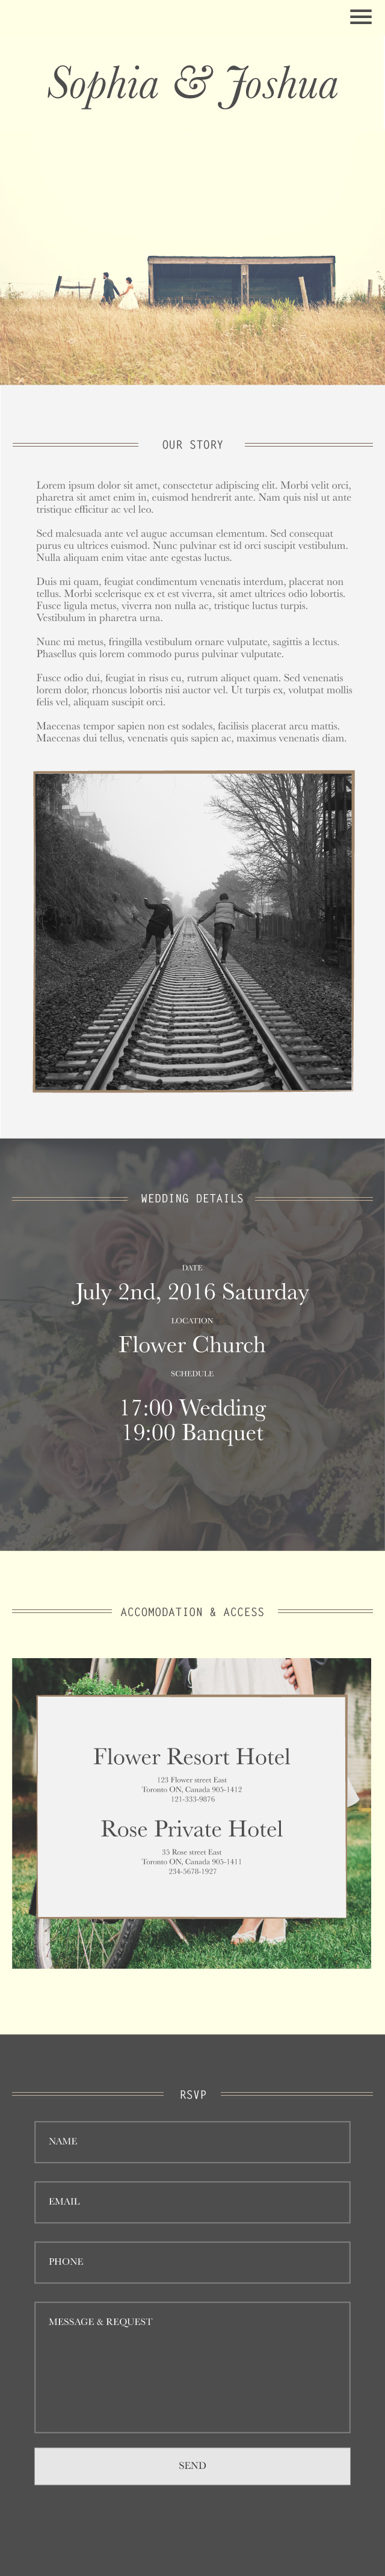 Wedding Invitation Mobile site prototype